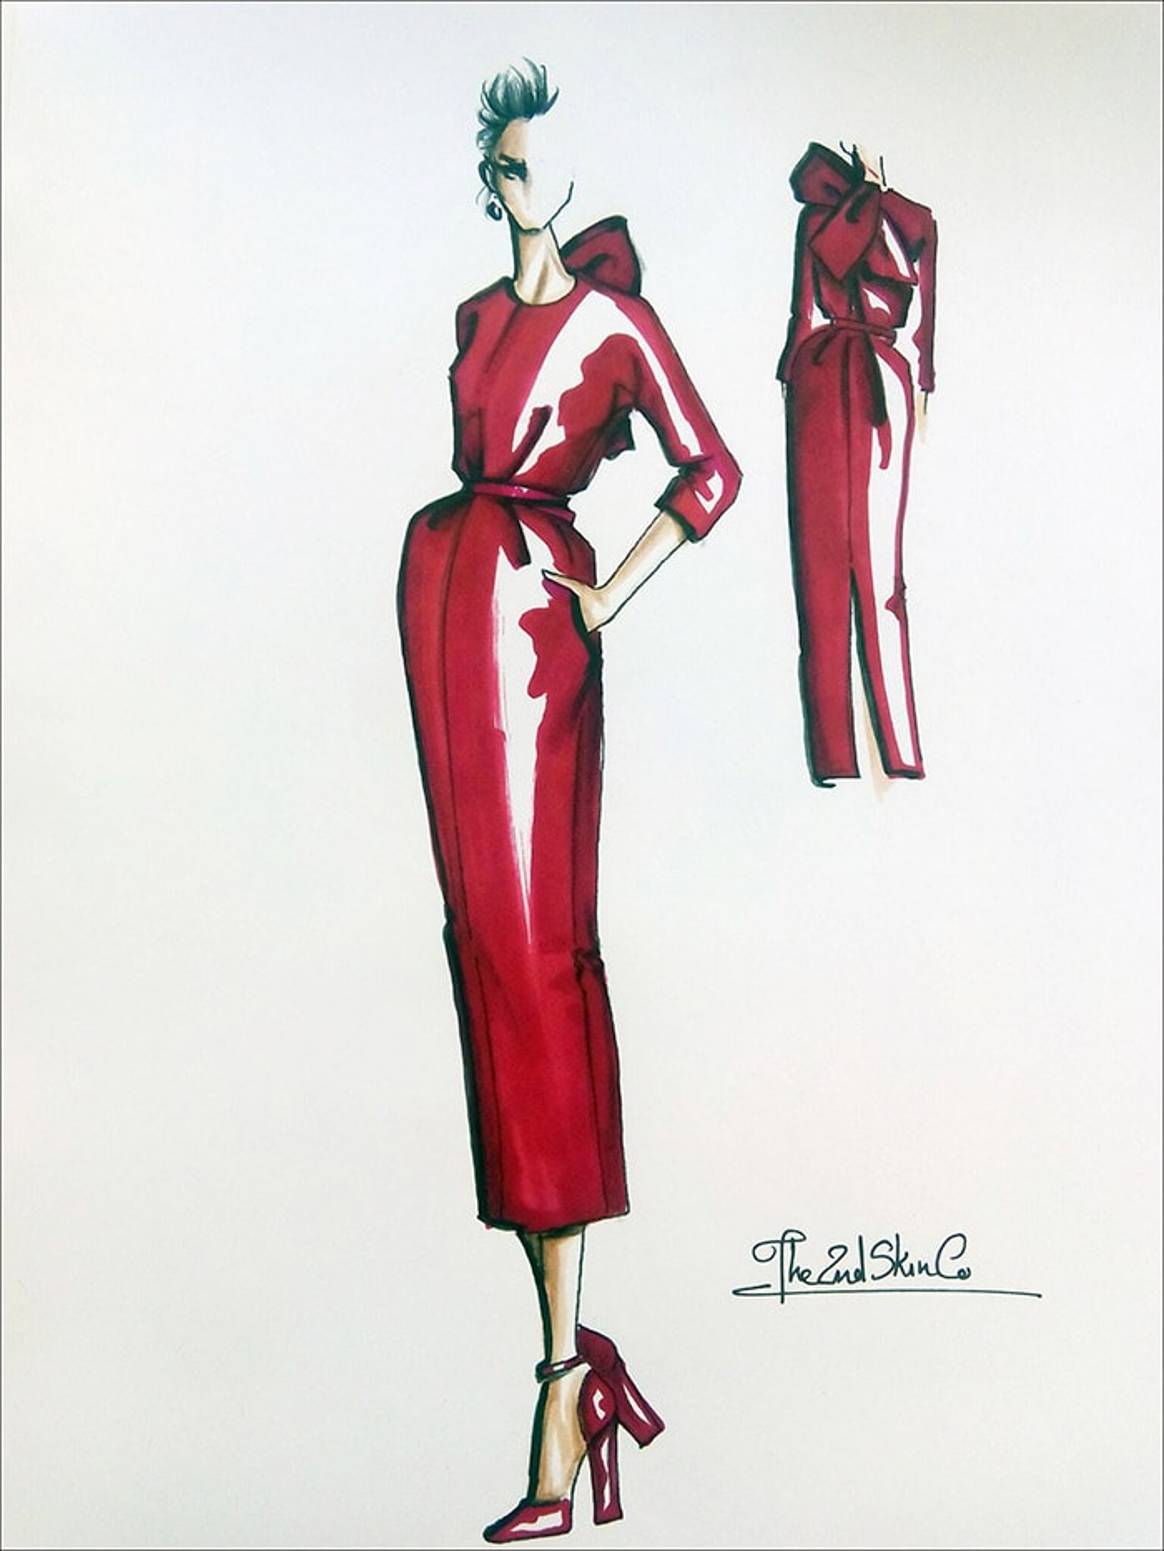 En Imágenes: Lady in Red para Hoteles Gran Mélia, por The 2nd Skin Co.